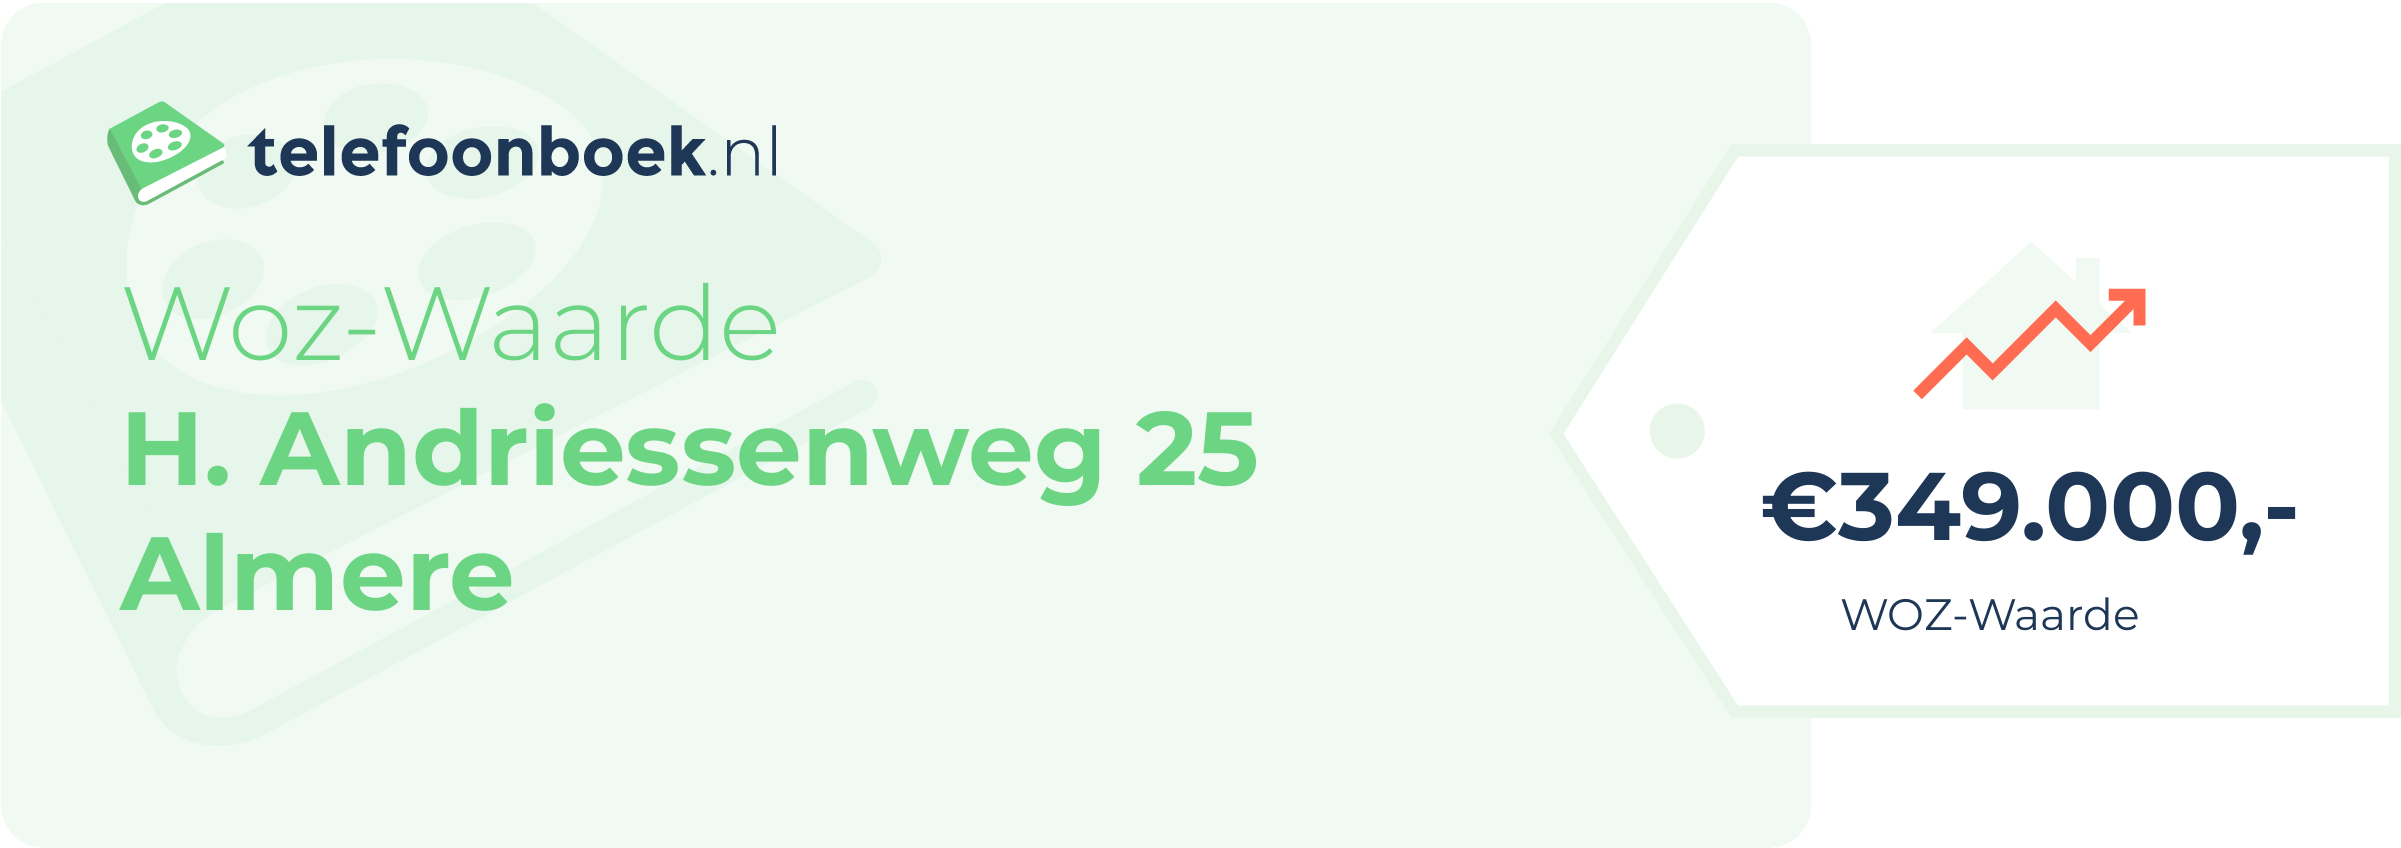 WOZ-waarde H. Andriessenweg 25 Almere